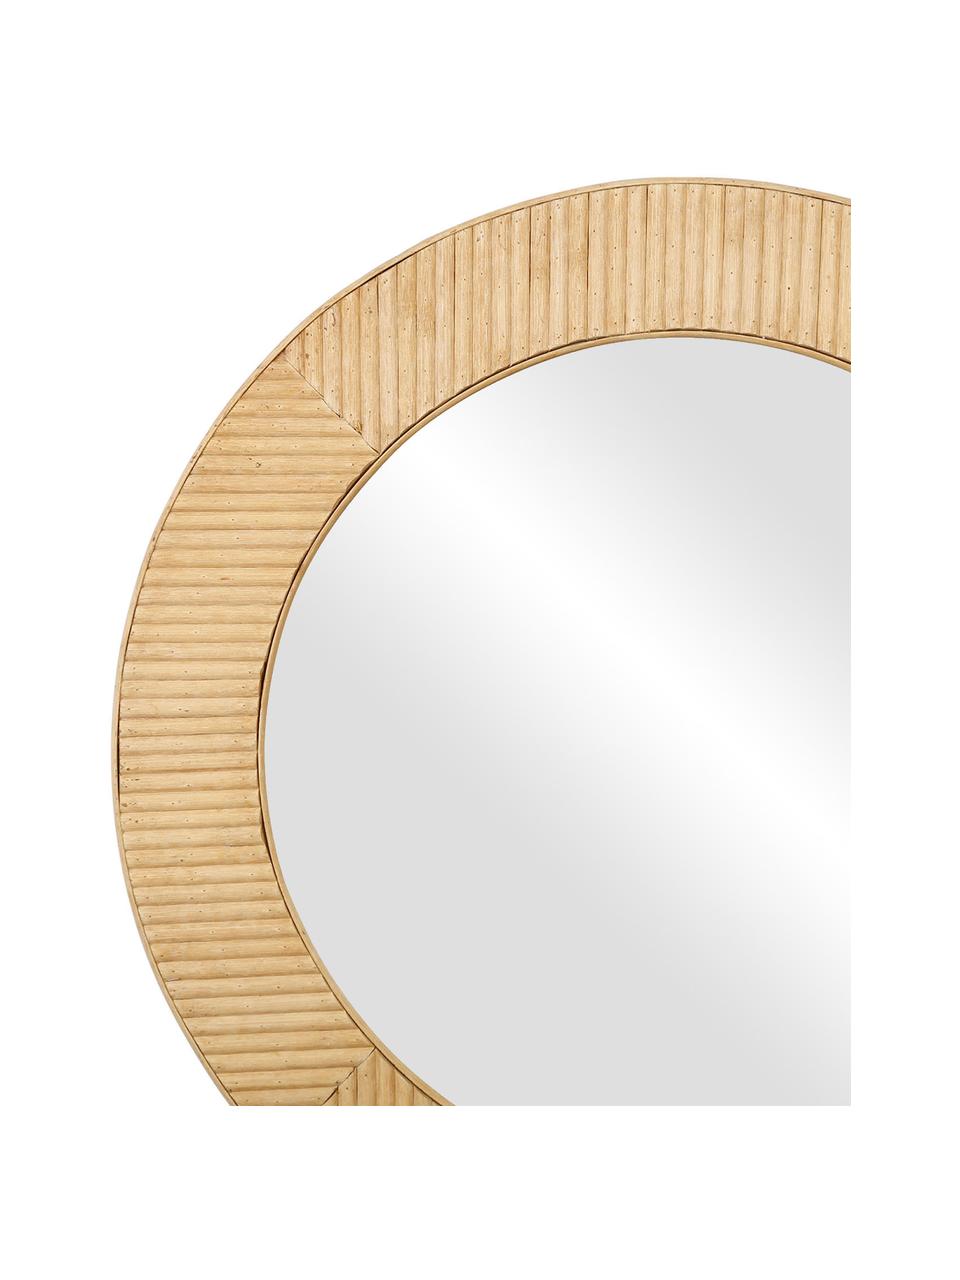 Runder Wandspiegel Solair mit Bambusrahmen, Rahmen: Bambus, Spiegelfläche: Spiegelglas, Beige, Ø 60 x T 2 cm